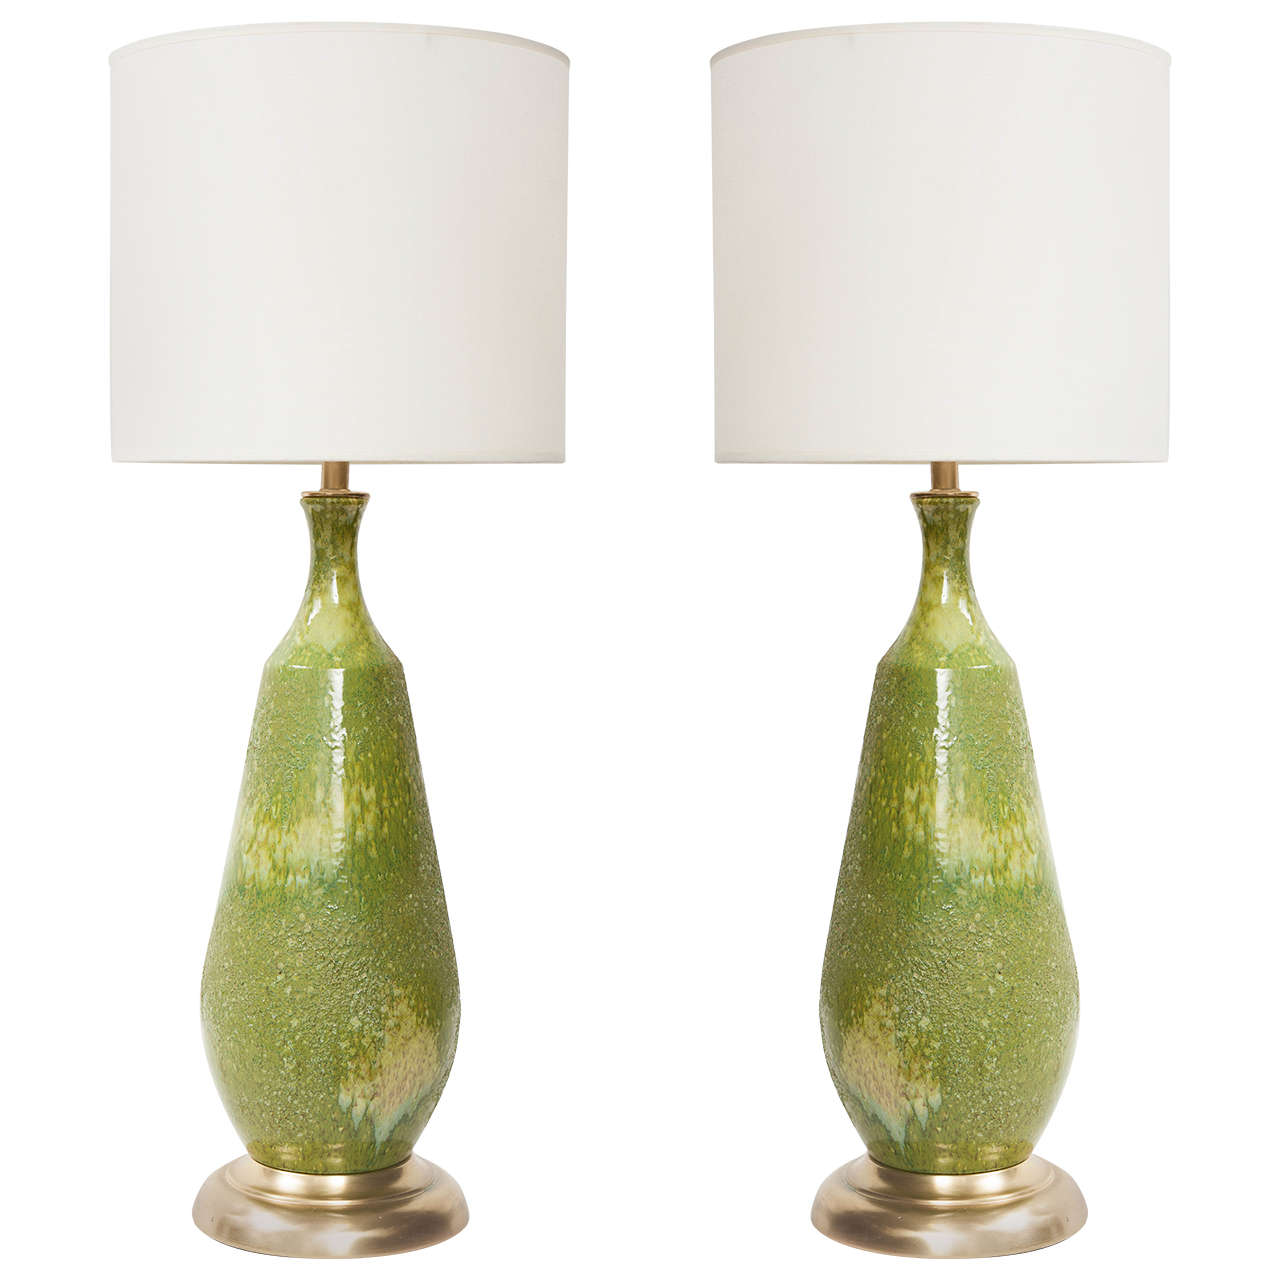 Pair of Italian Sea Foam Green Ceramic Lamps